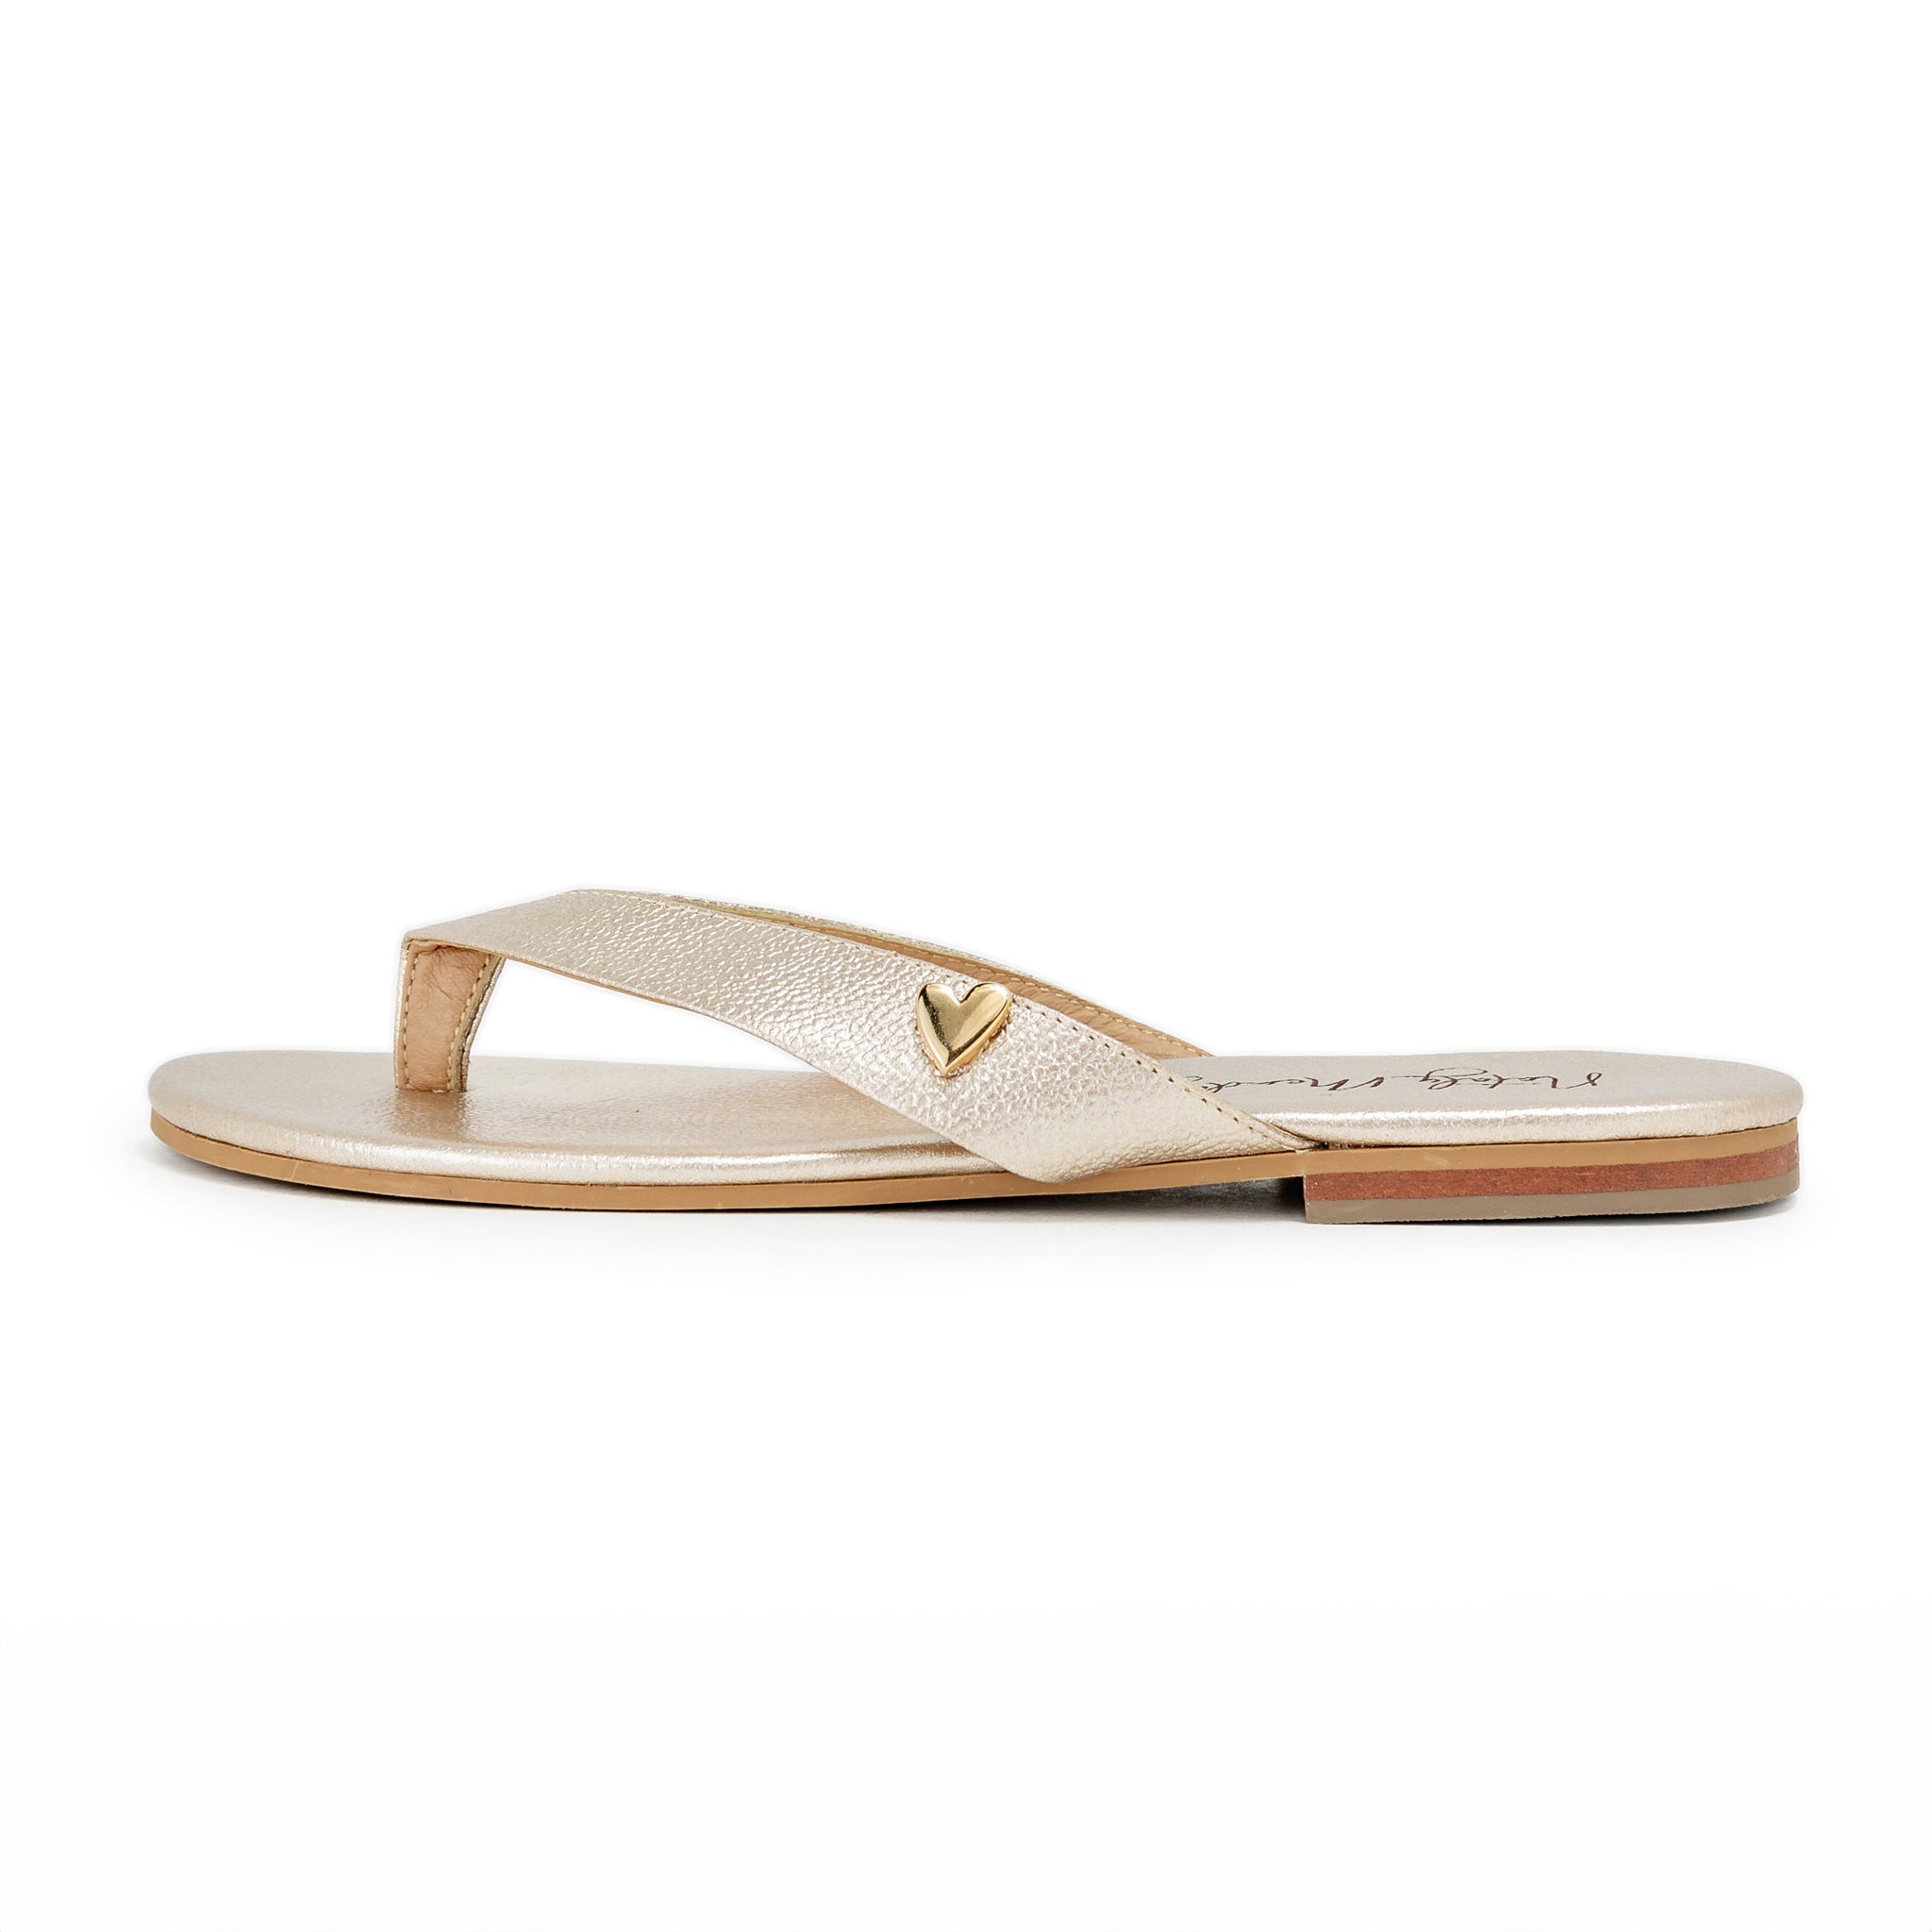 Antonella Flats Sandals - Gold